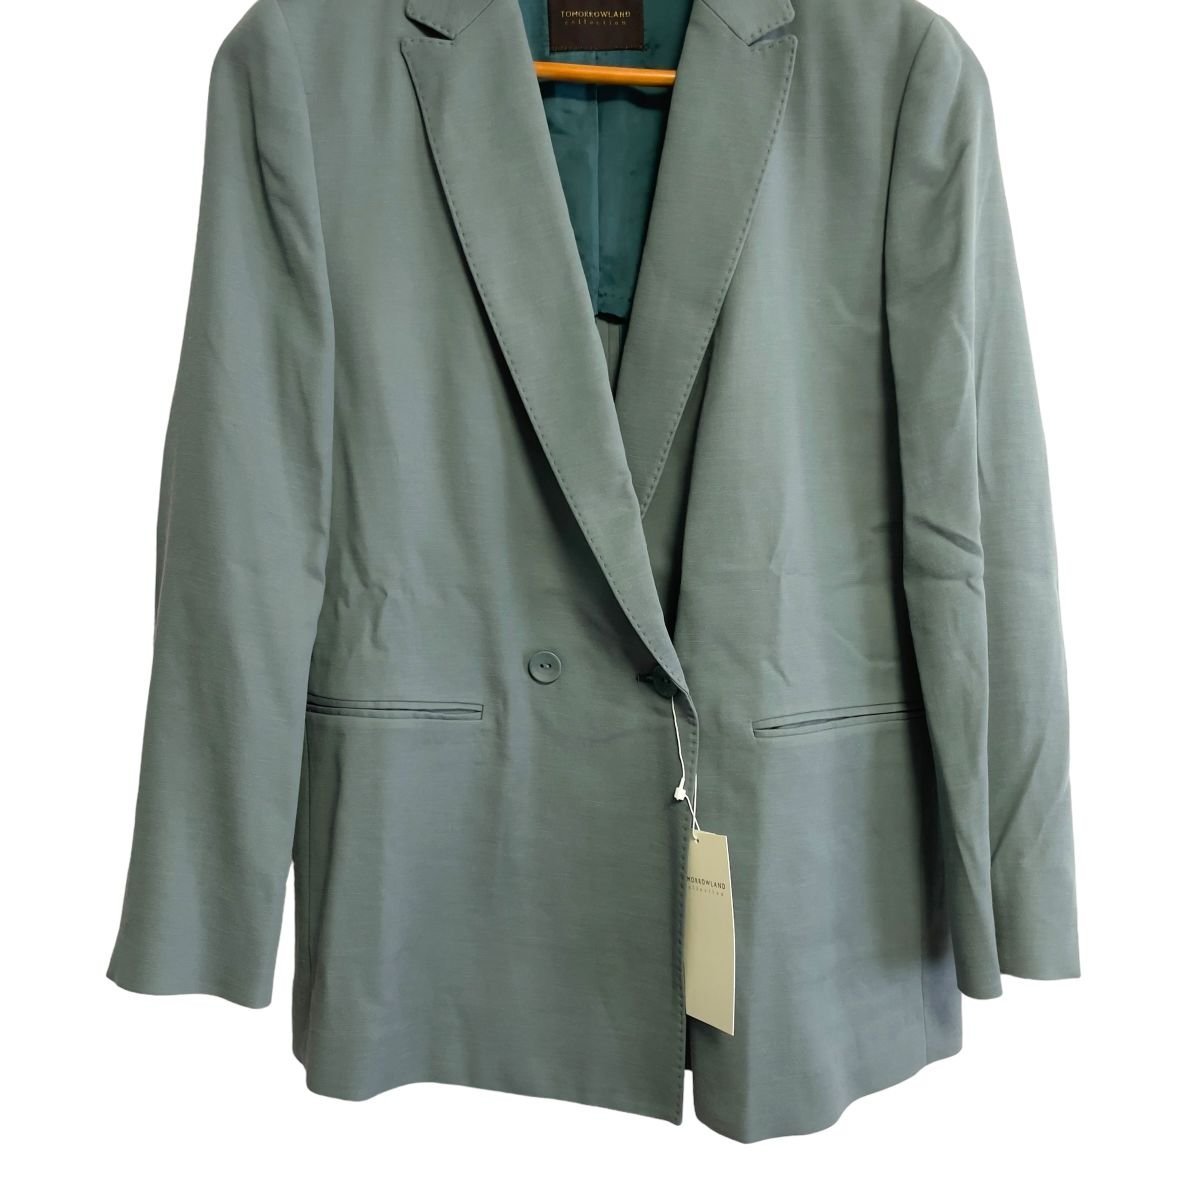  неиспользуемый  22AW TOMORROWLAND collection ... Roland  ... стрейч   двойной  ... отдых   пиджак  36  зеленый ◆